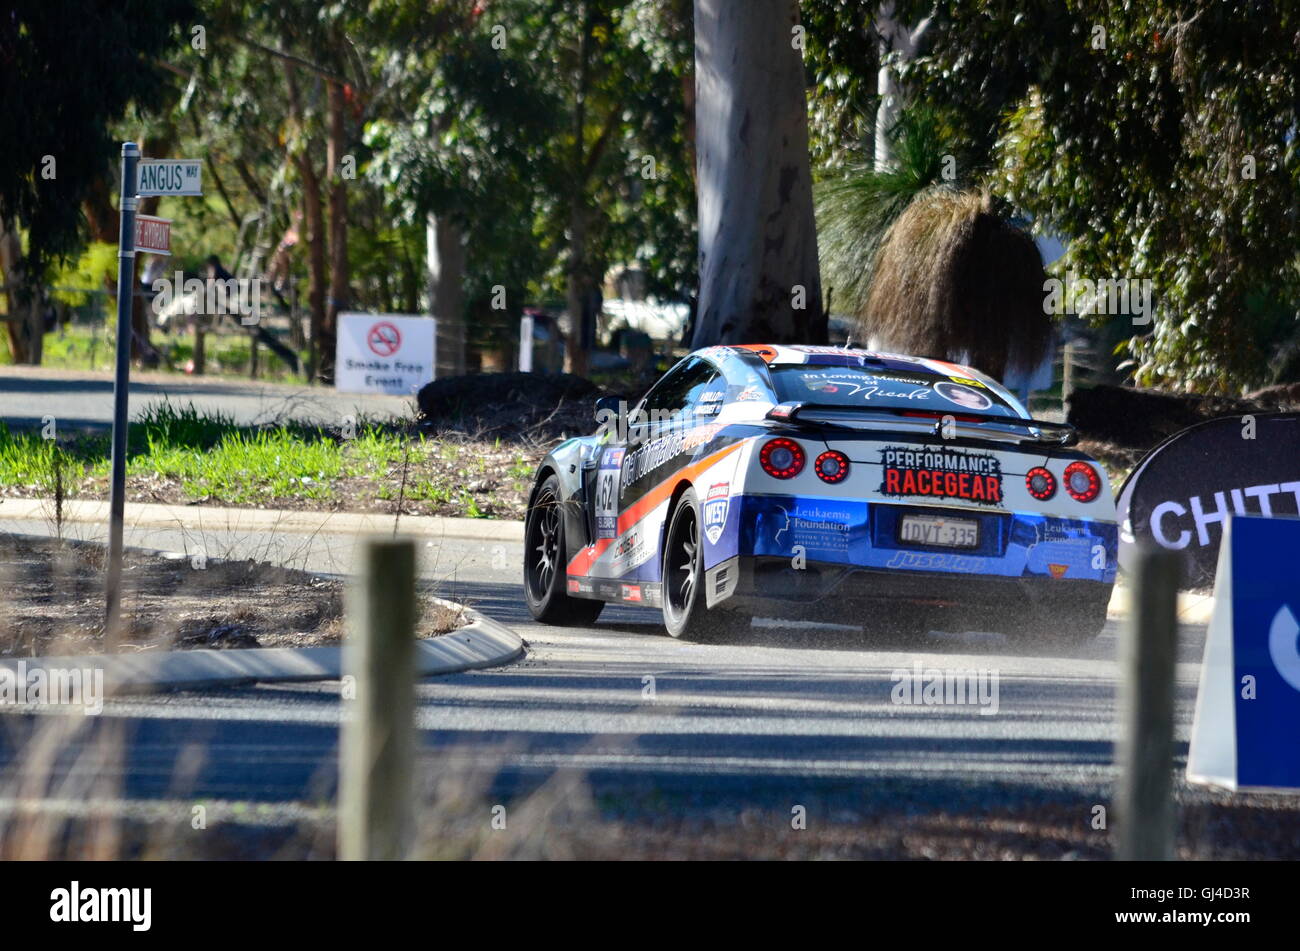 Perth West Australia.13th August 2016 konkurrierenden Auto auf der Straße kommen. Targa West Rallye teams dritten Tag Rallye Rennen um Landstädte und in Perth Stadt im Wettbewerb mit Wertungsprüfungen über vier Tage.  Stanley/Alamy live News Stockfoto